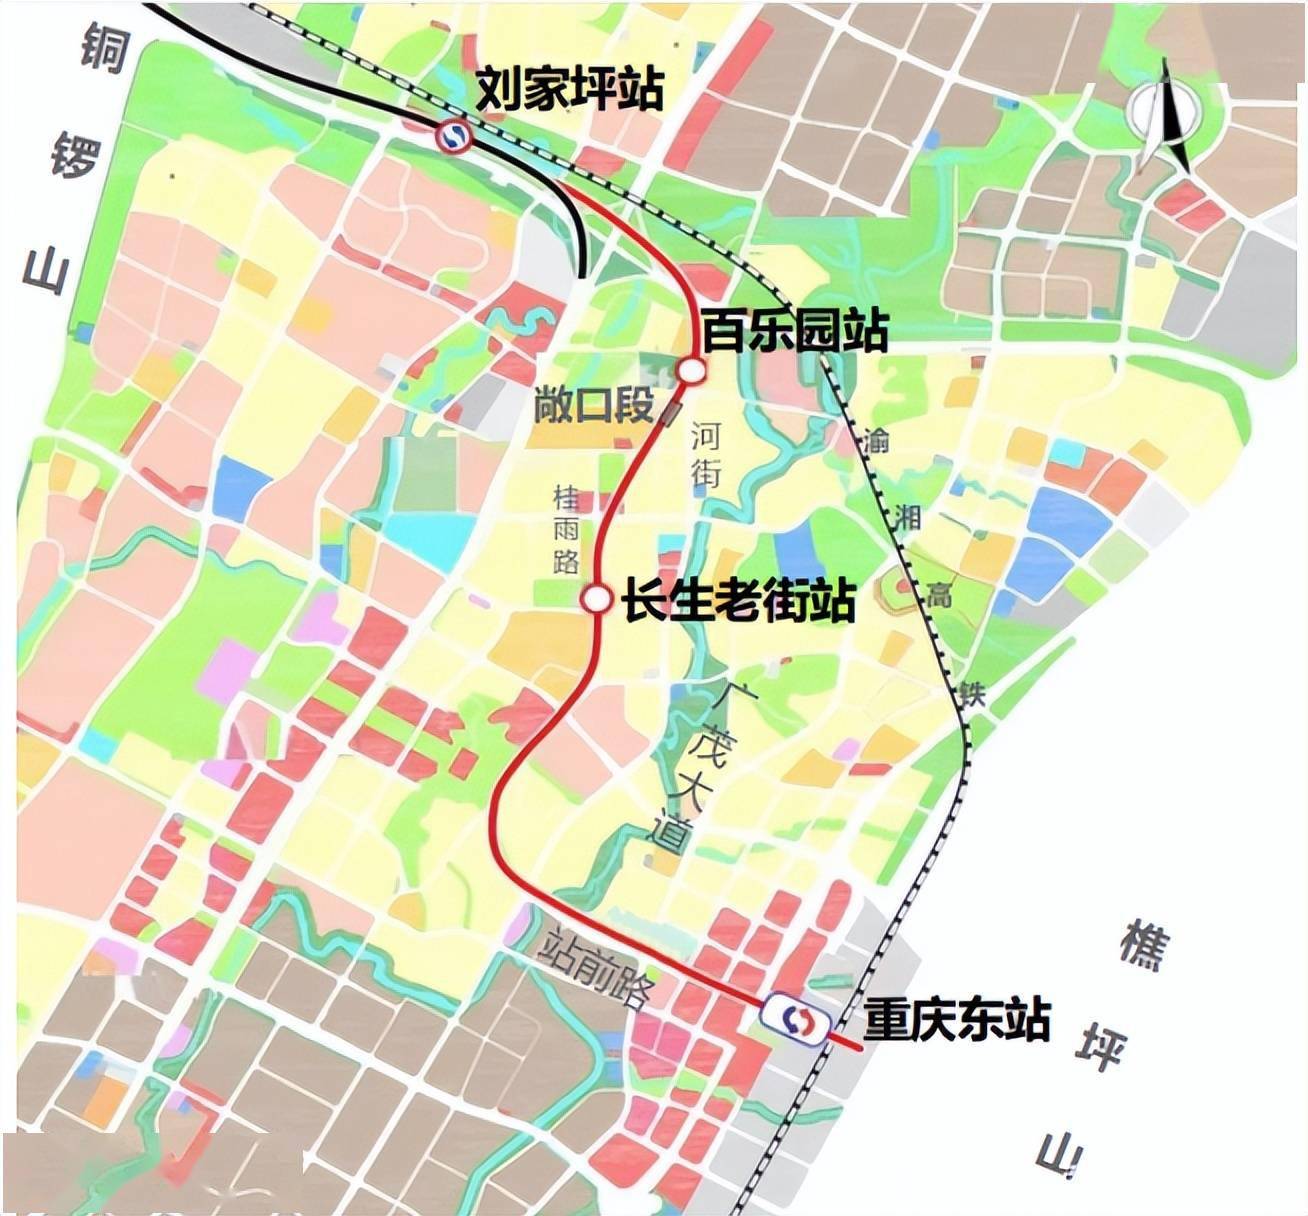 重庆轨道交通6号线东延伸段位于南岸区茶园组团,线路起于重庆东站,止